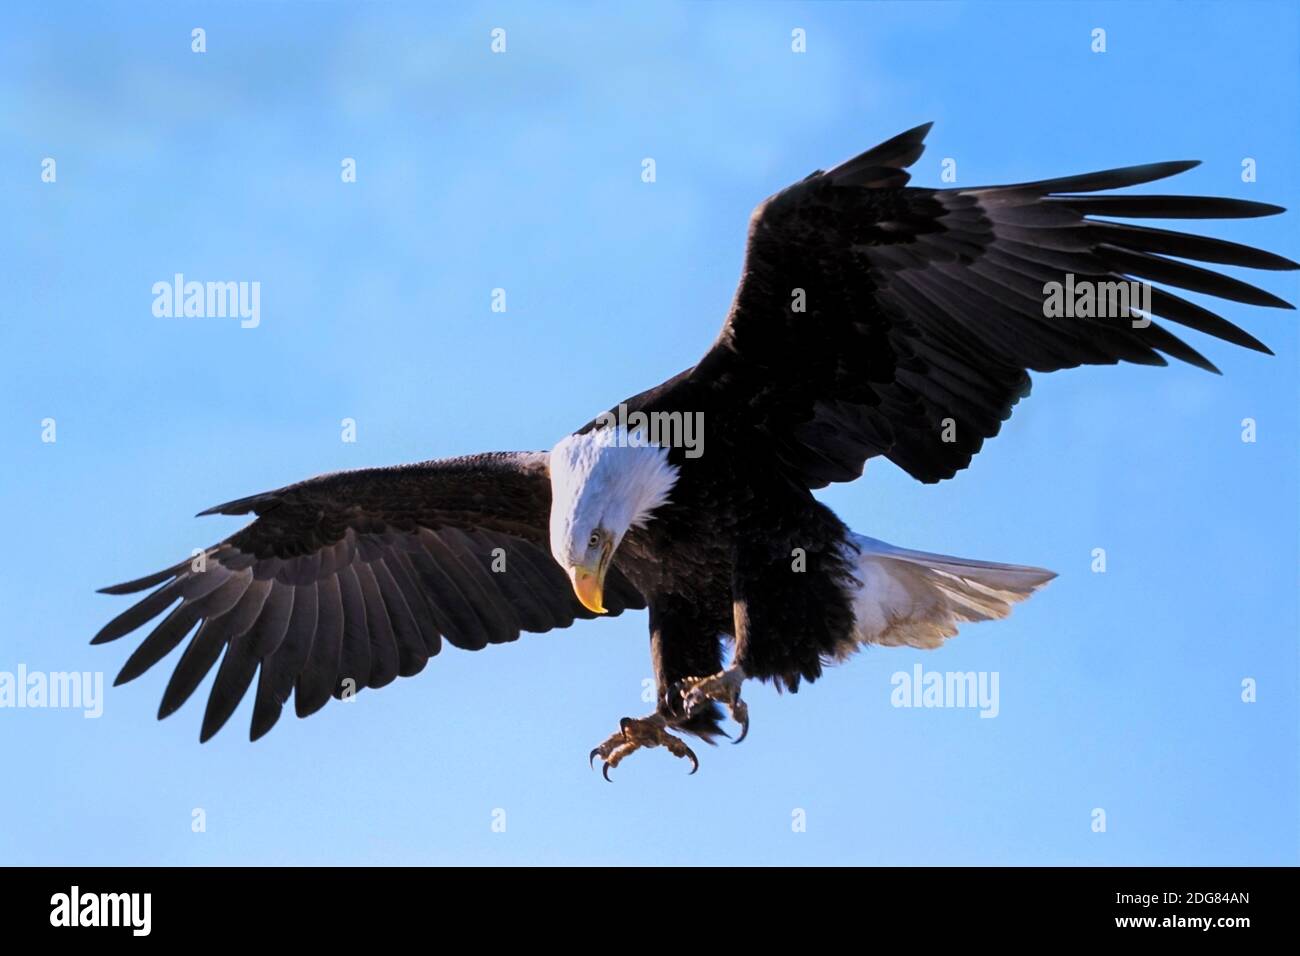 Weißkopfadler im Flug am blauen Himmel, die Krallen ausgestreckt, bereit, seine Beute zu fangen. Stockfoto